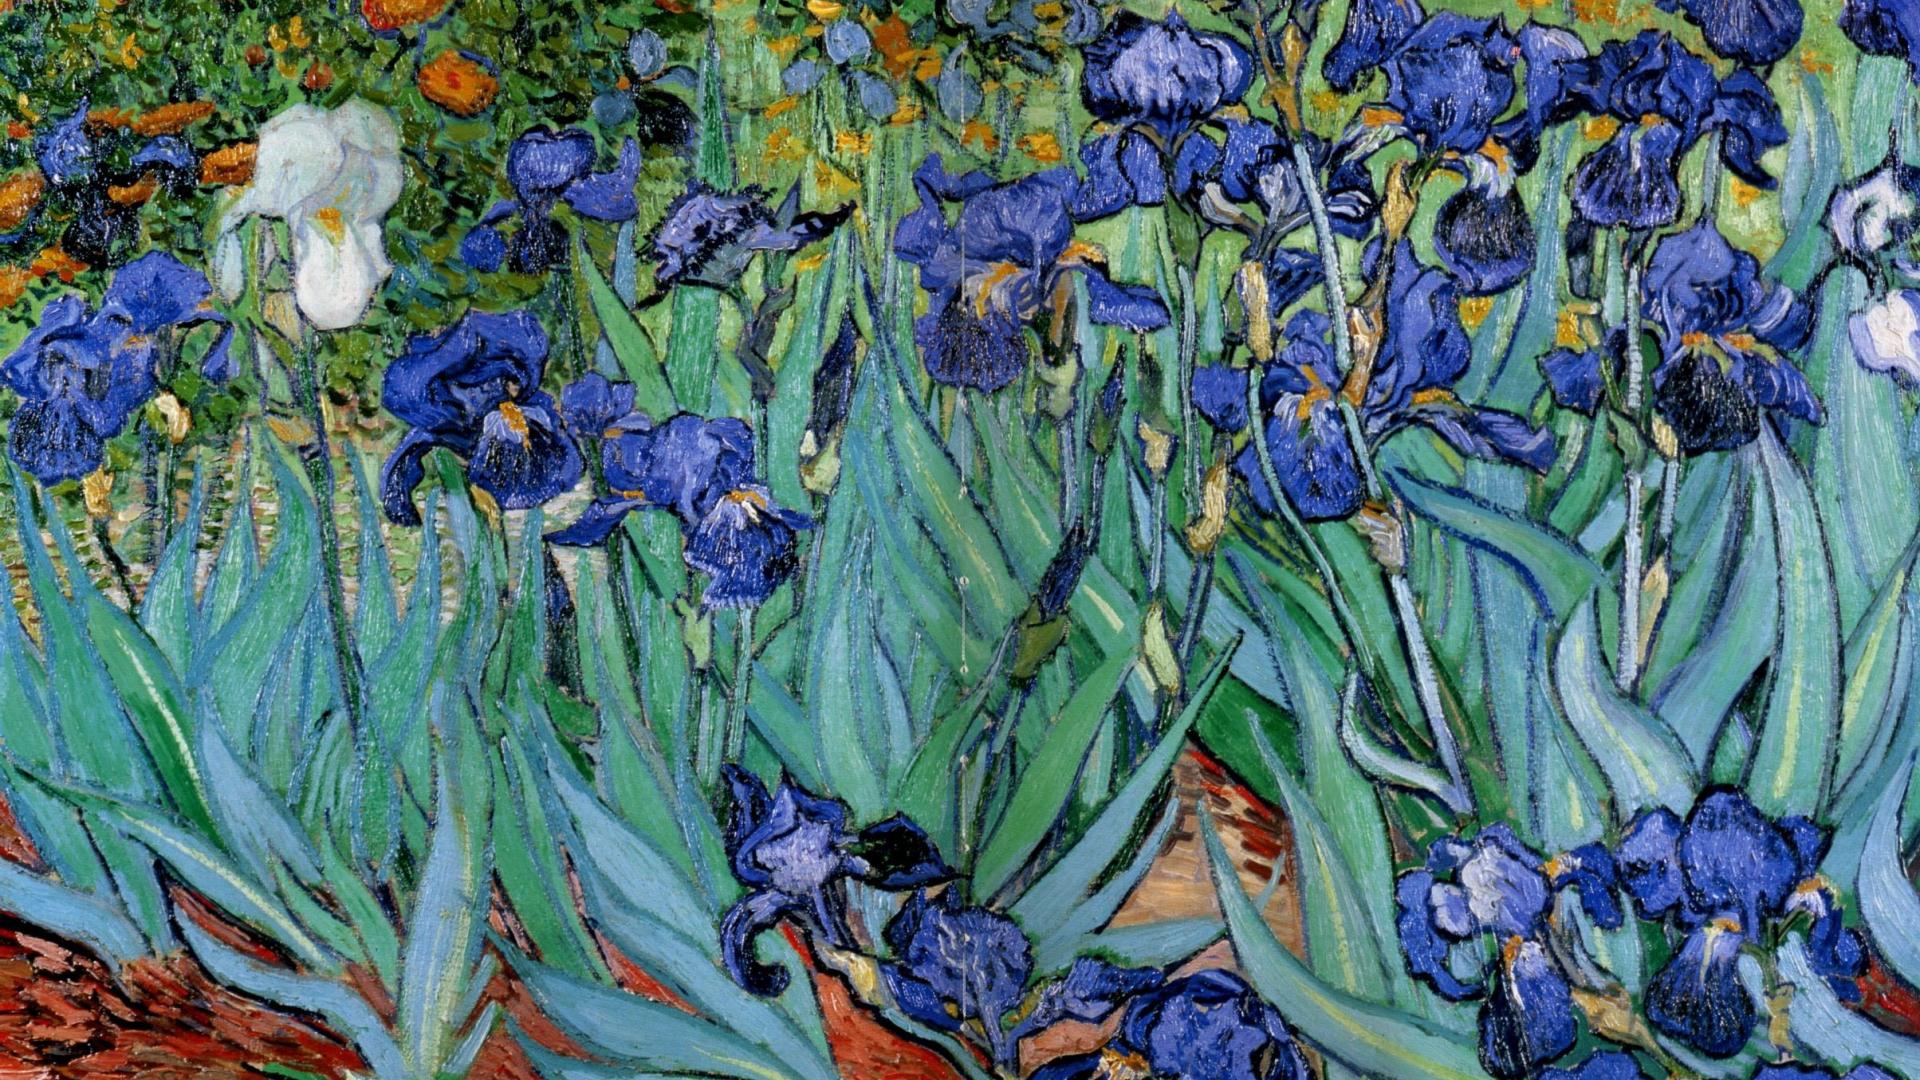 Hãy cùng tận hưởng vẻ đẹp tinh tế của bức tranh Irises của Van Gogh trên màn hình máy tính của bạn. Với những đường nét mềm mại và ánh sáng phản chiếu tuyệt đẹp, bức ảnh nền này sẽ khiến cho không gian làm việc của bạn trở nên thú vị và mang tính nghệ thuật.